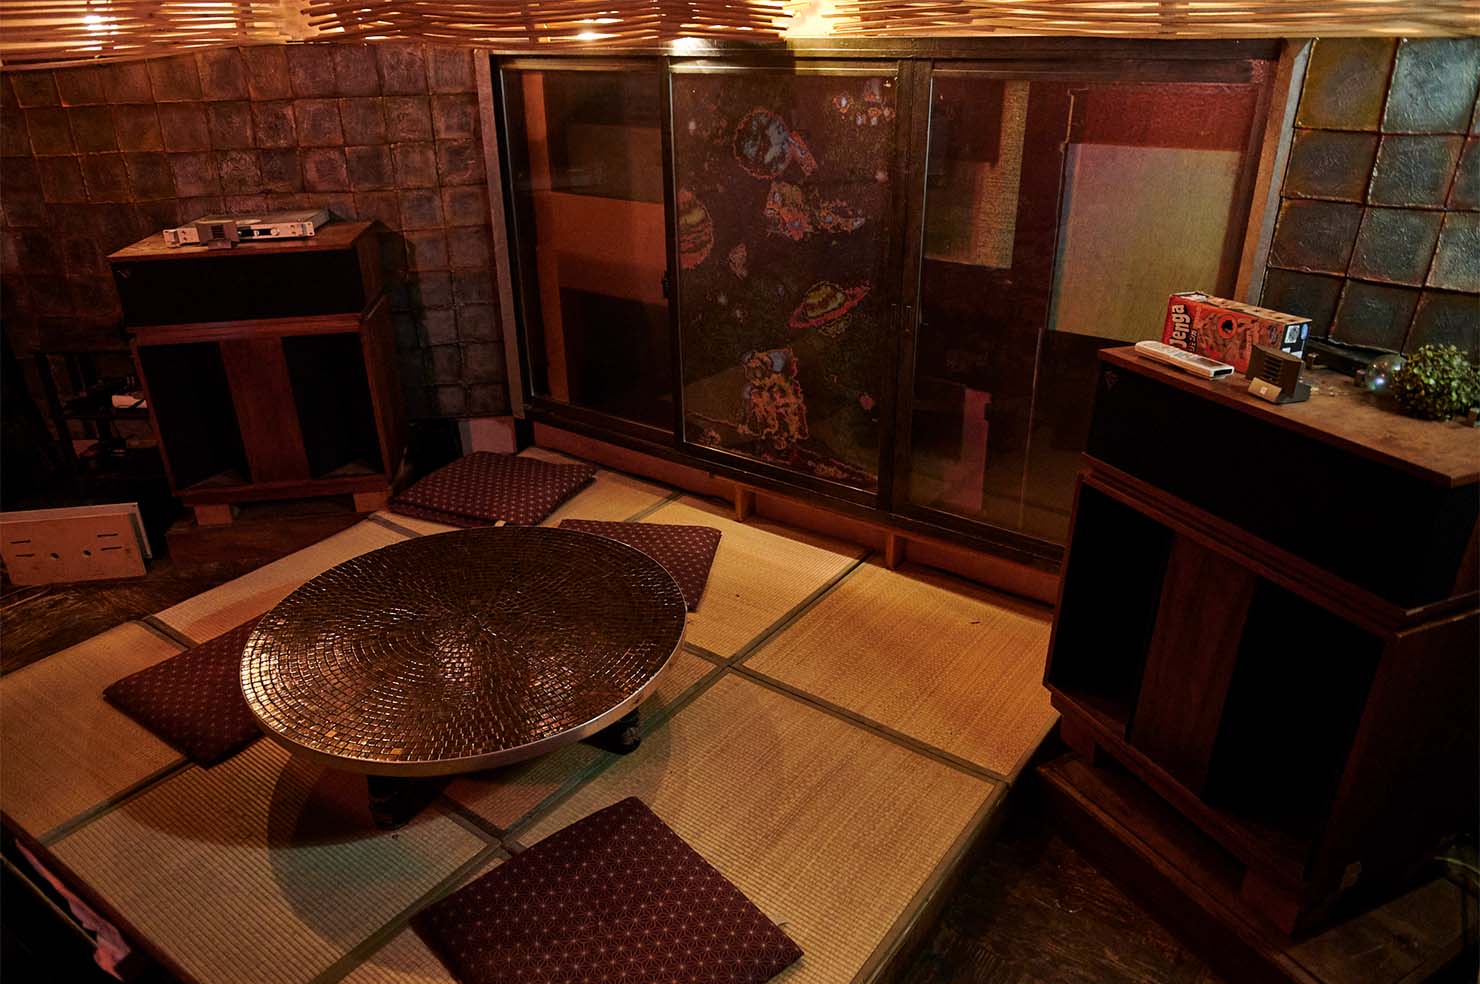 bar bonoboの2階は座敷になっており、スピーカーはKlipschornのHERITAGEが置かれている。 SEIさんいわく「メインフロアよりも理想の音に近い」とのこと